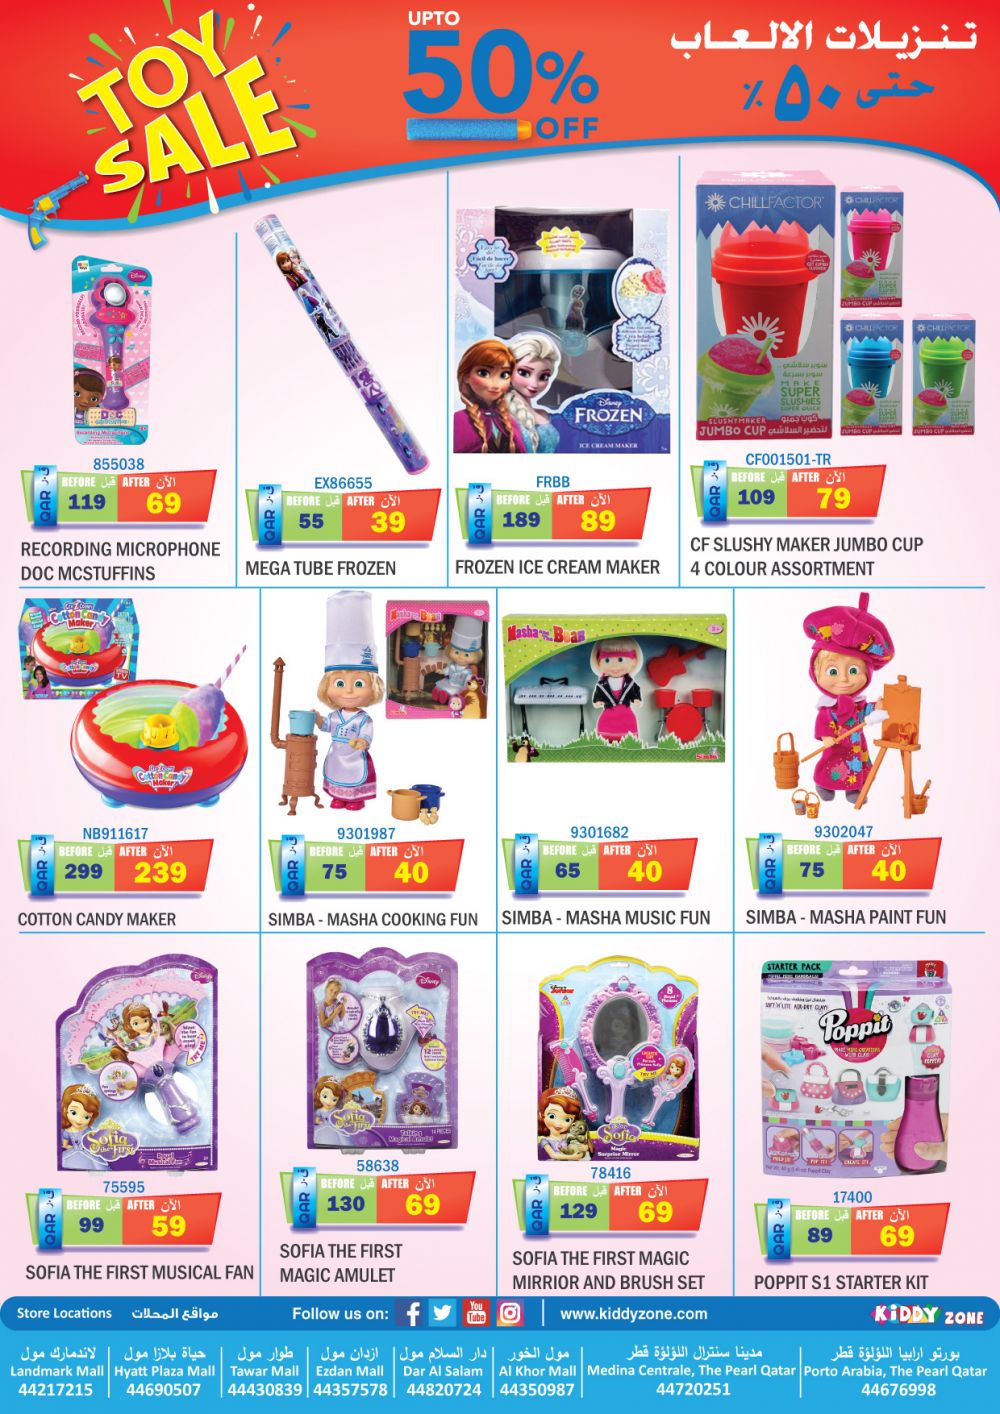 Toy Sale up to 50%- Kiddy Zone Qatar